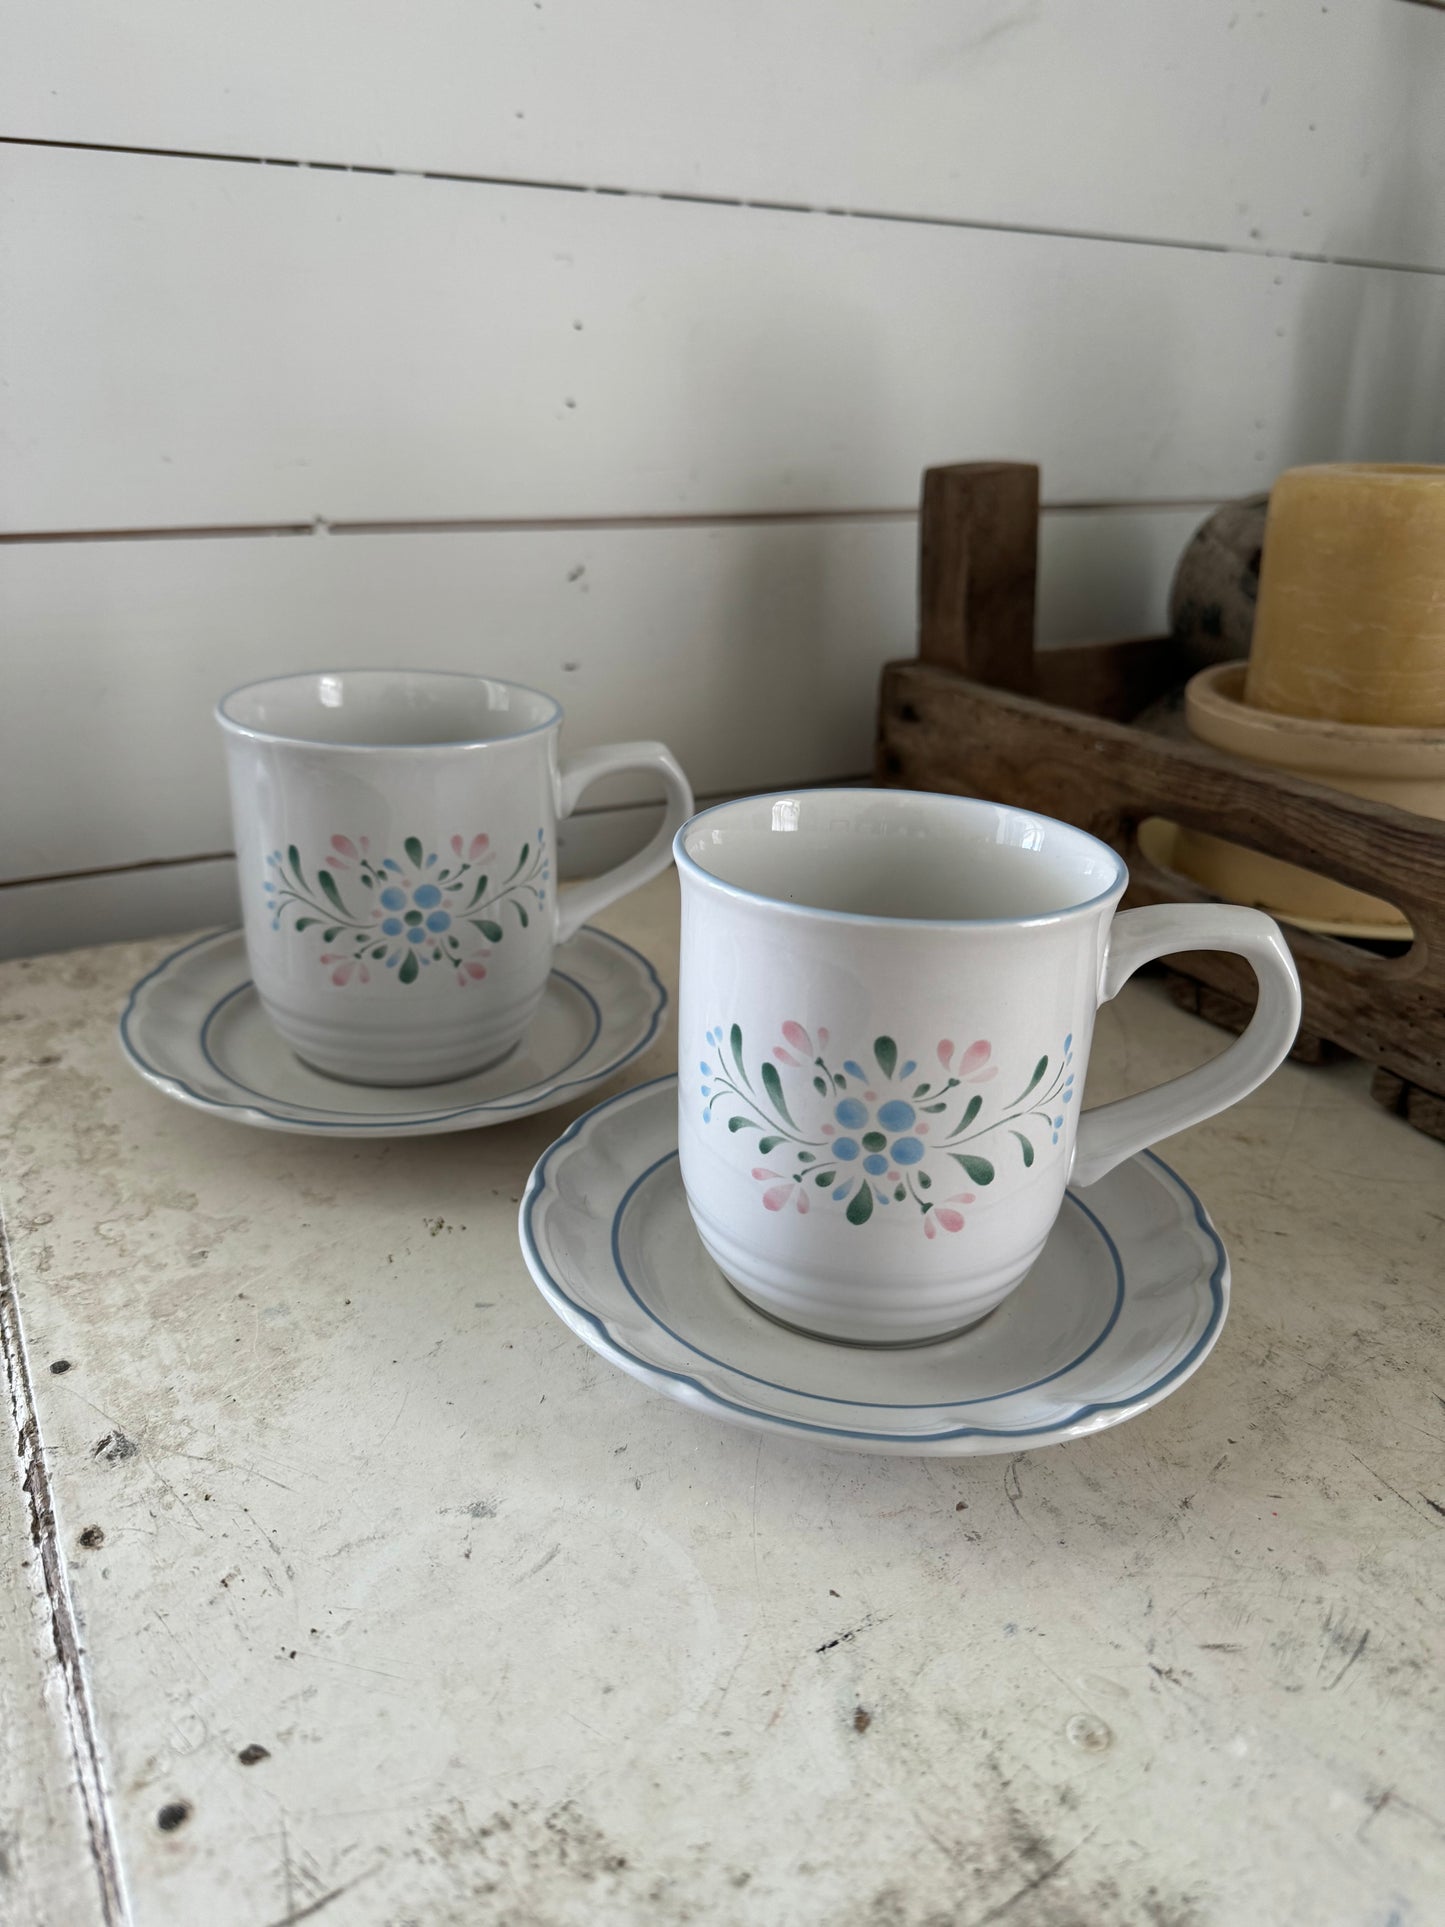 Fascino Stoneware Mug Set of Two Floral Ceramic Vintage Mugs with plates by Fascino Stoneware Japan